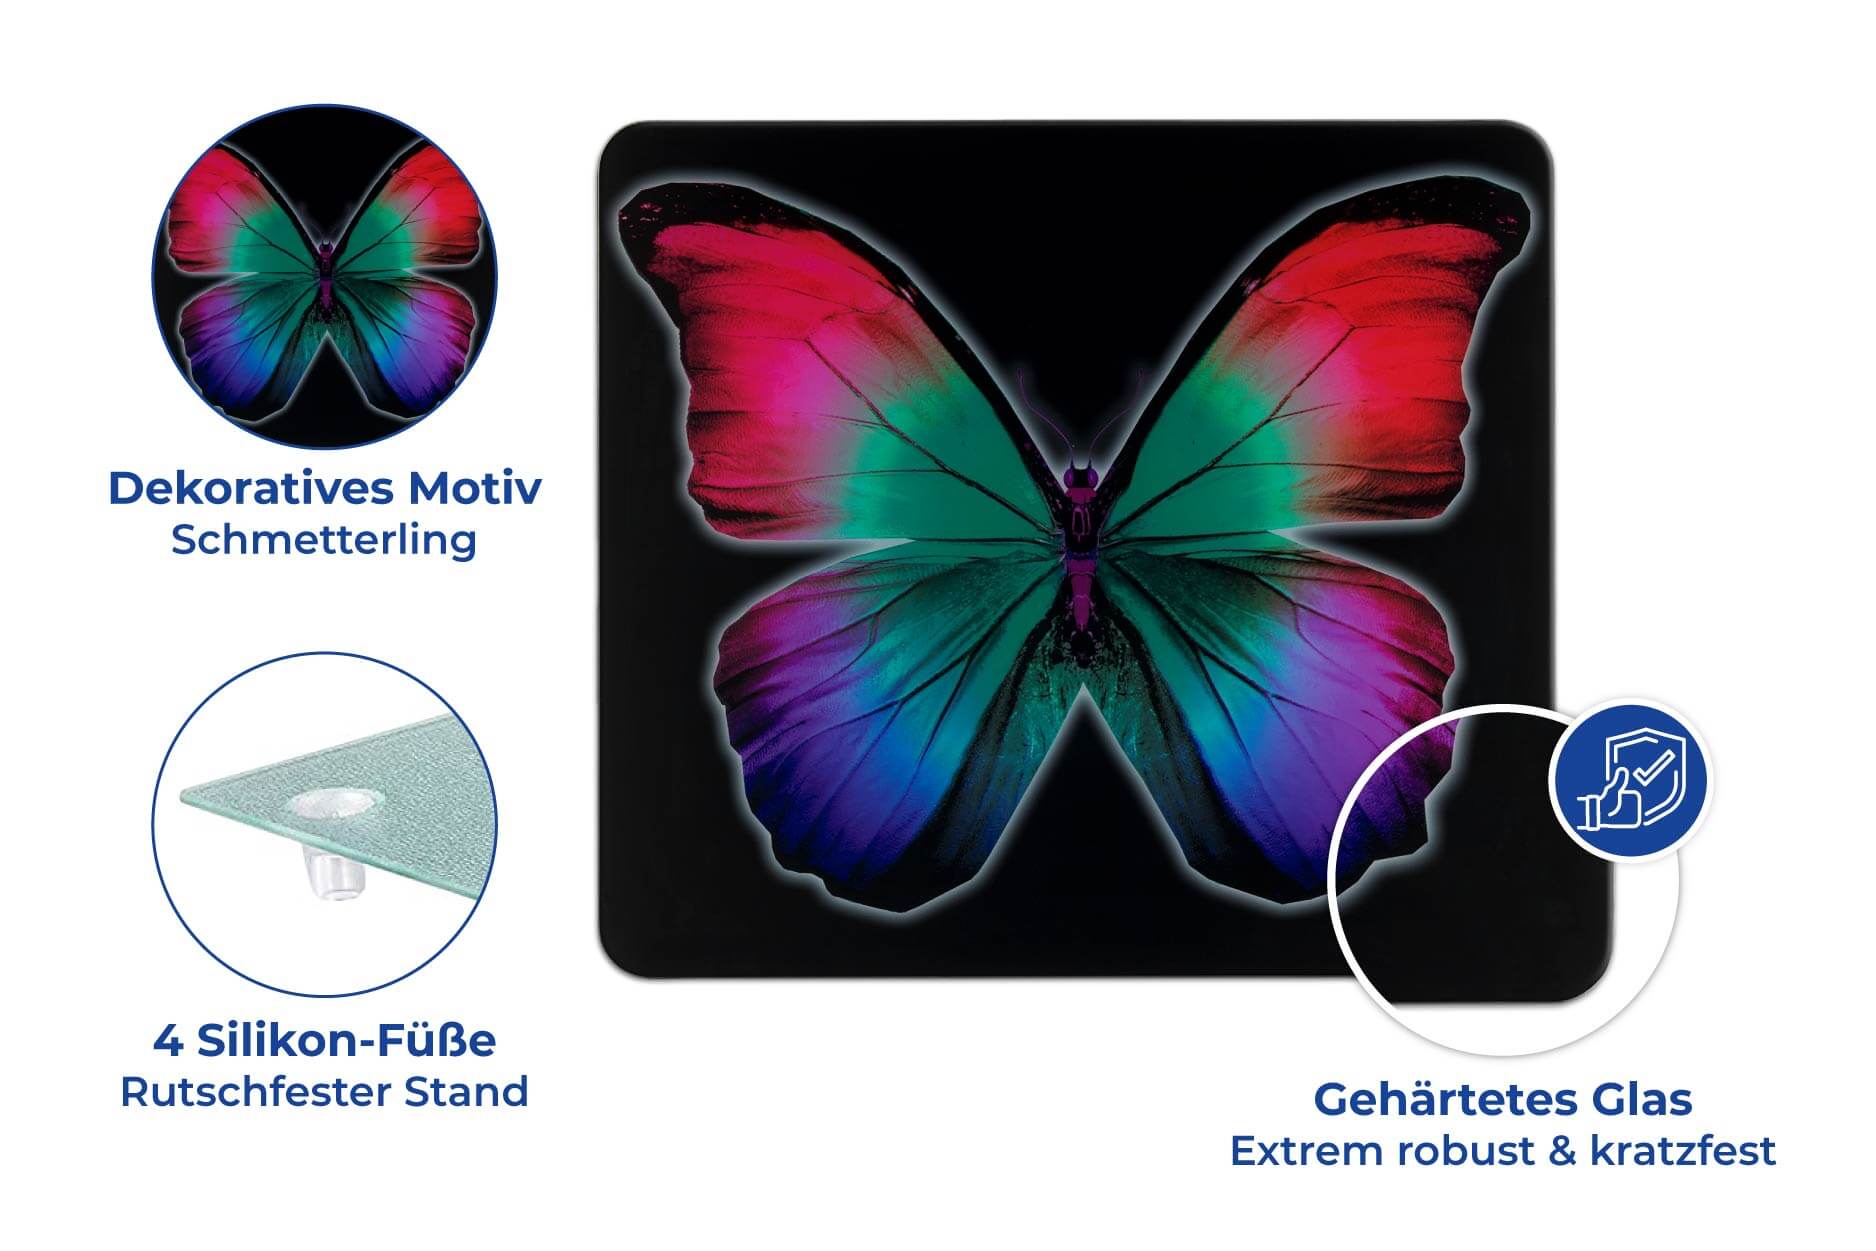 Multi-Platte Butterfly by Night, für Glaskeramik Kochfelder, Schneidbrett